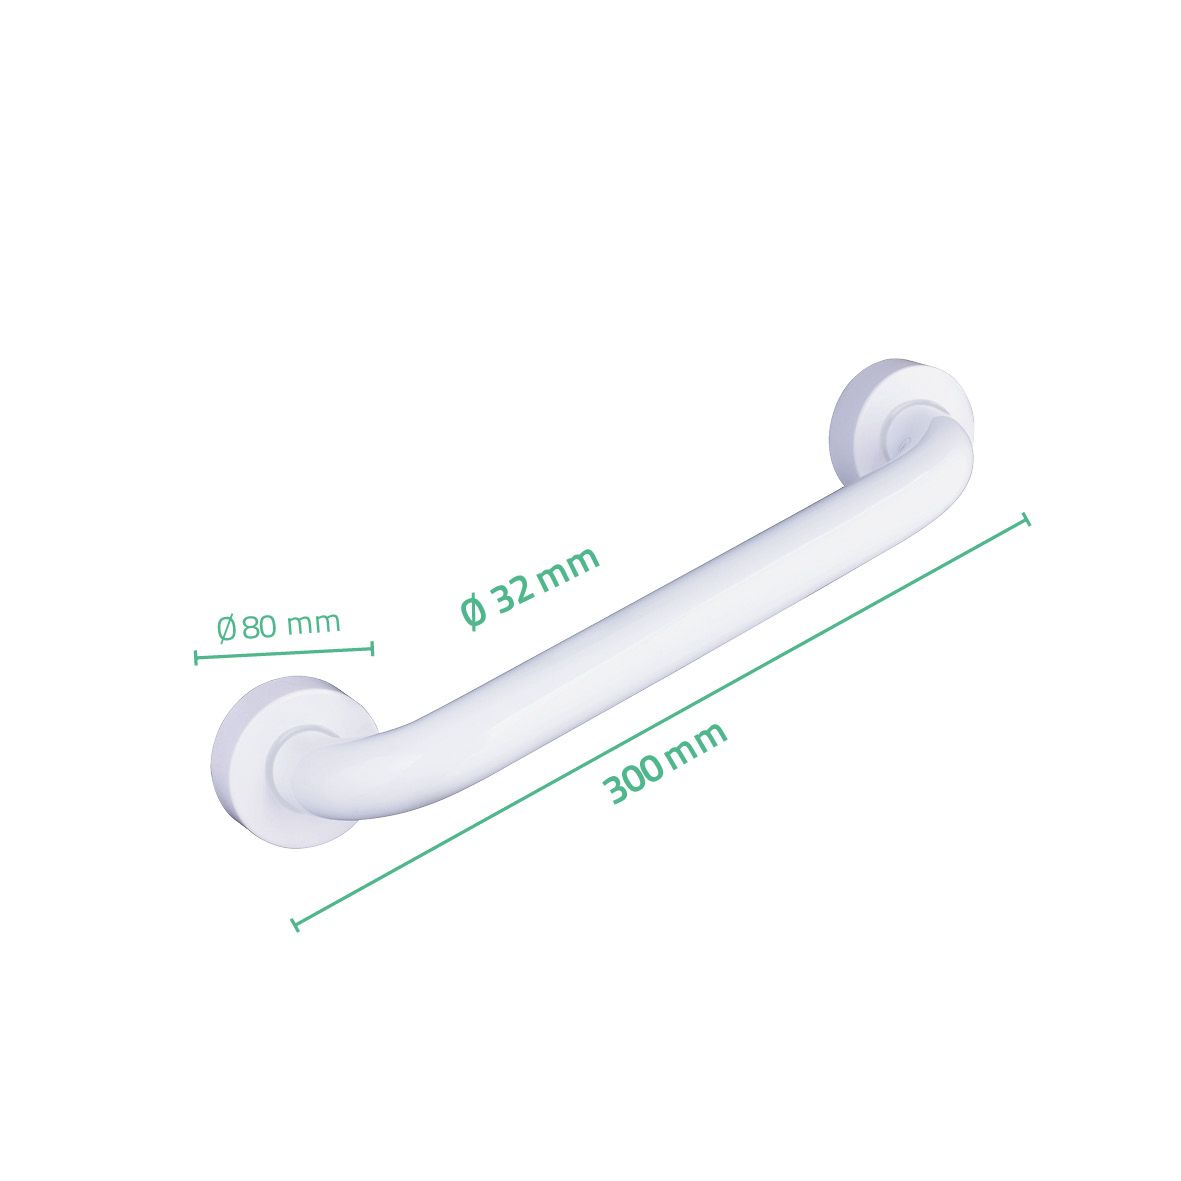 Поручень для ванны белый (30 см) Ridder поручень для ванны pro s 30 см белый